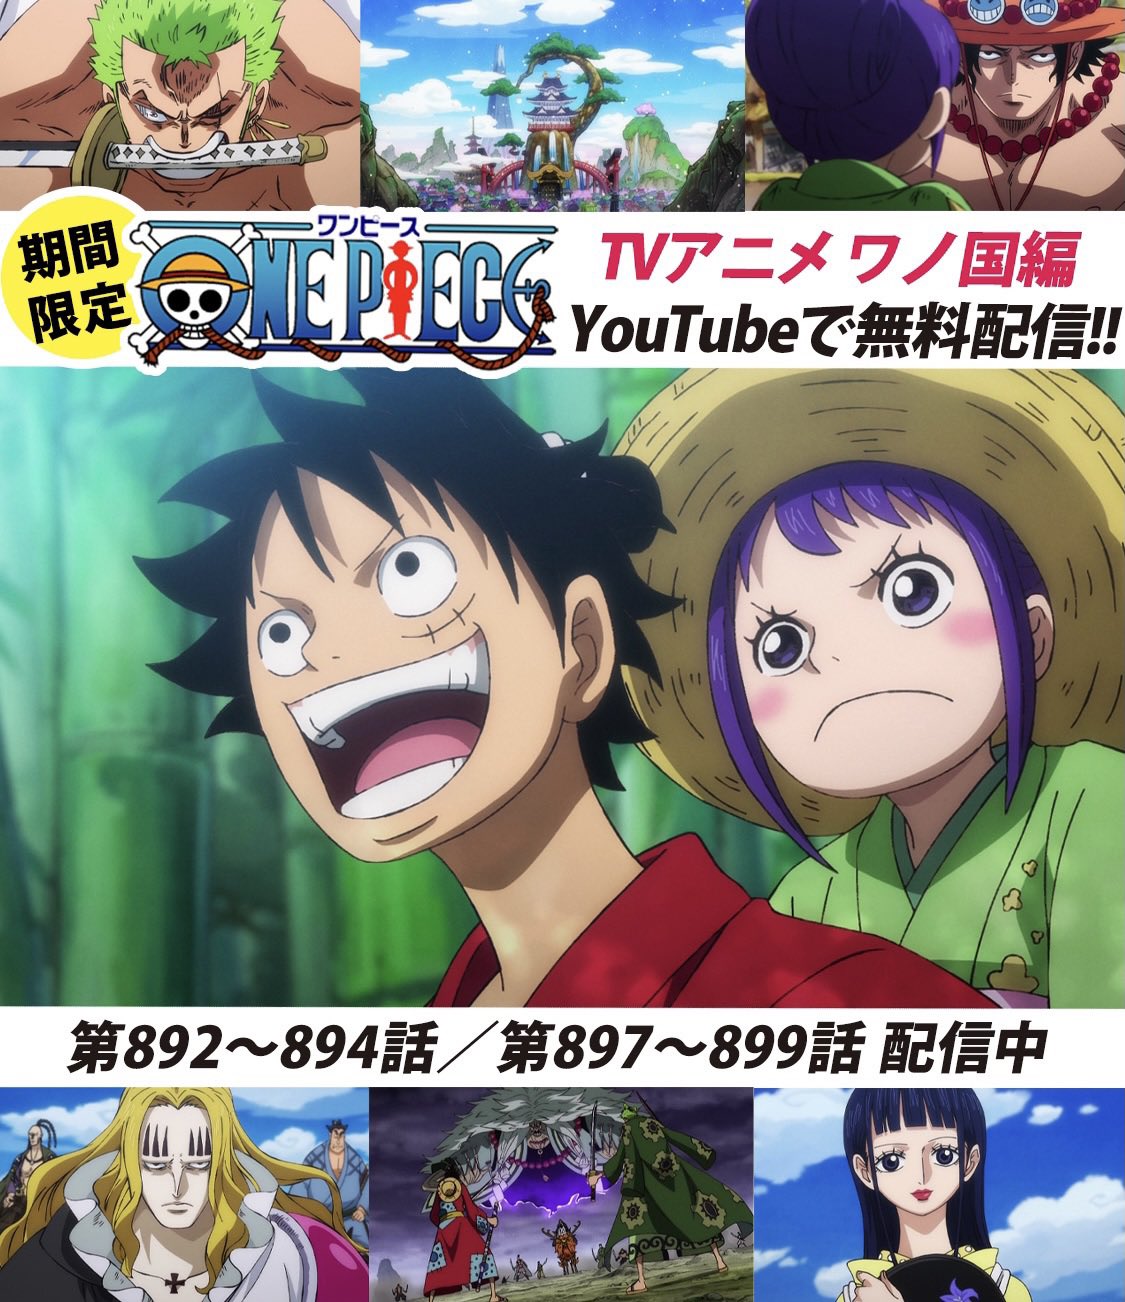 One Piece スタッフ 公式 Official Youtubeにてアニメ無料配信中 本日から ワノ国編 スタート One Piece公式チャンネルにて 毎週6話ずつ配信していきます 配信を記念して 声優さんからのコメント動画も到着 まずは2話をみる